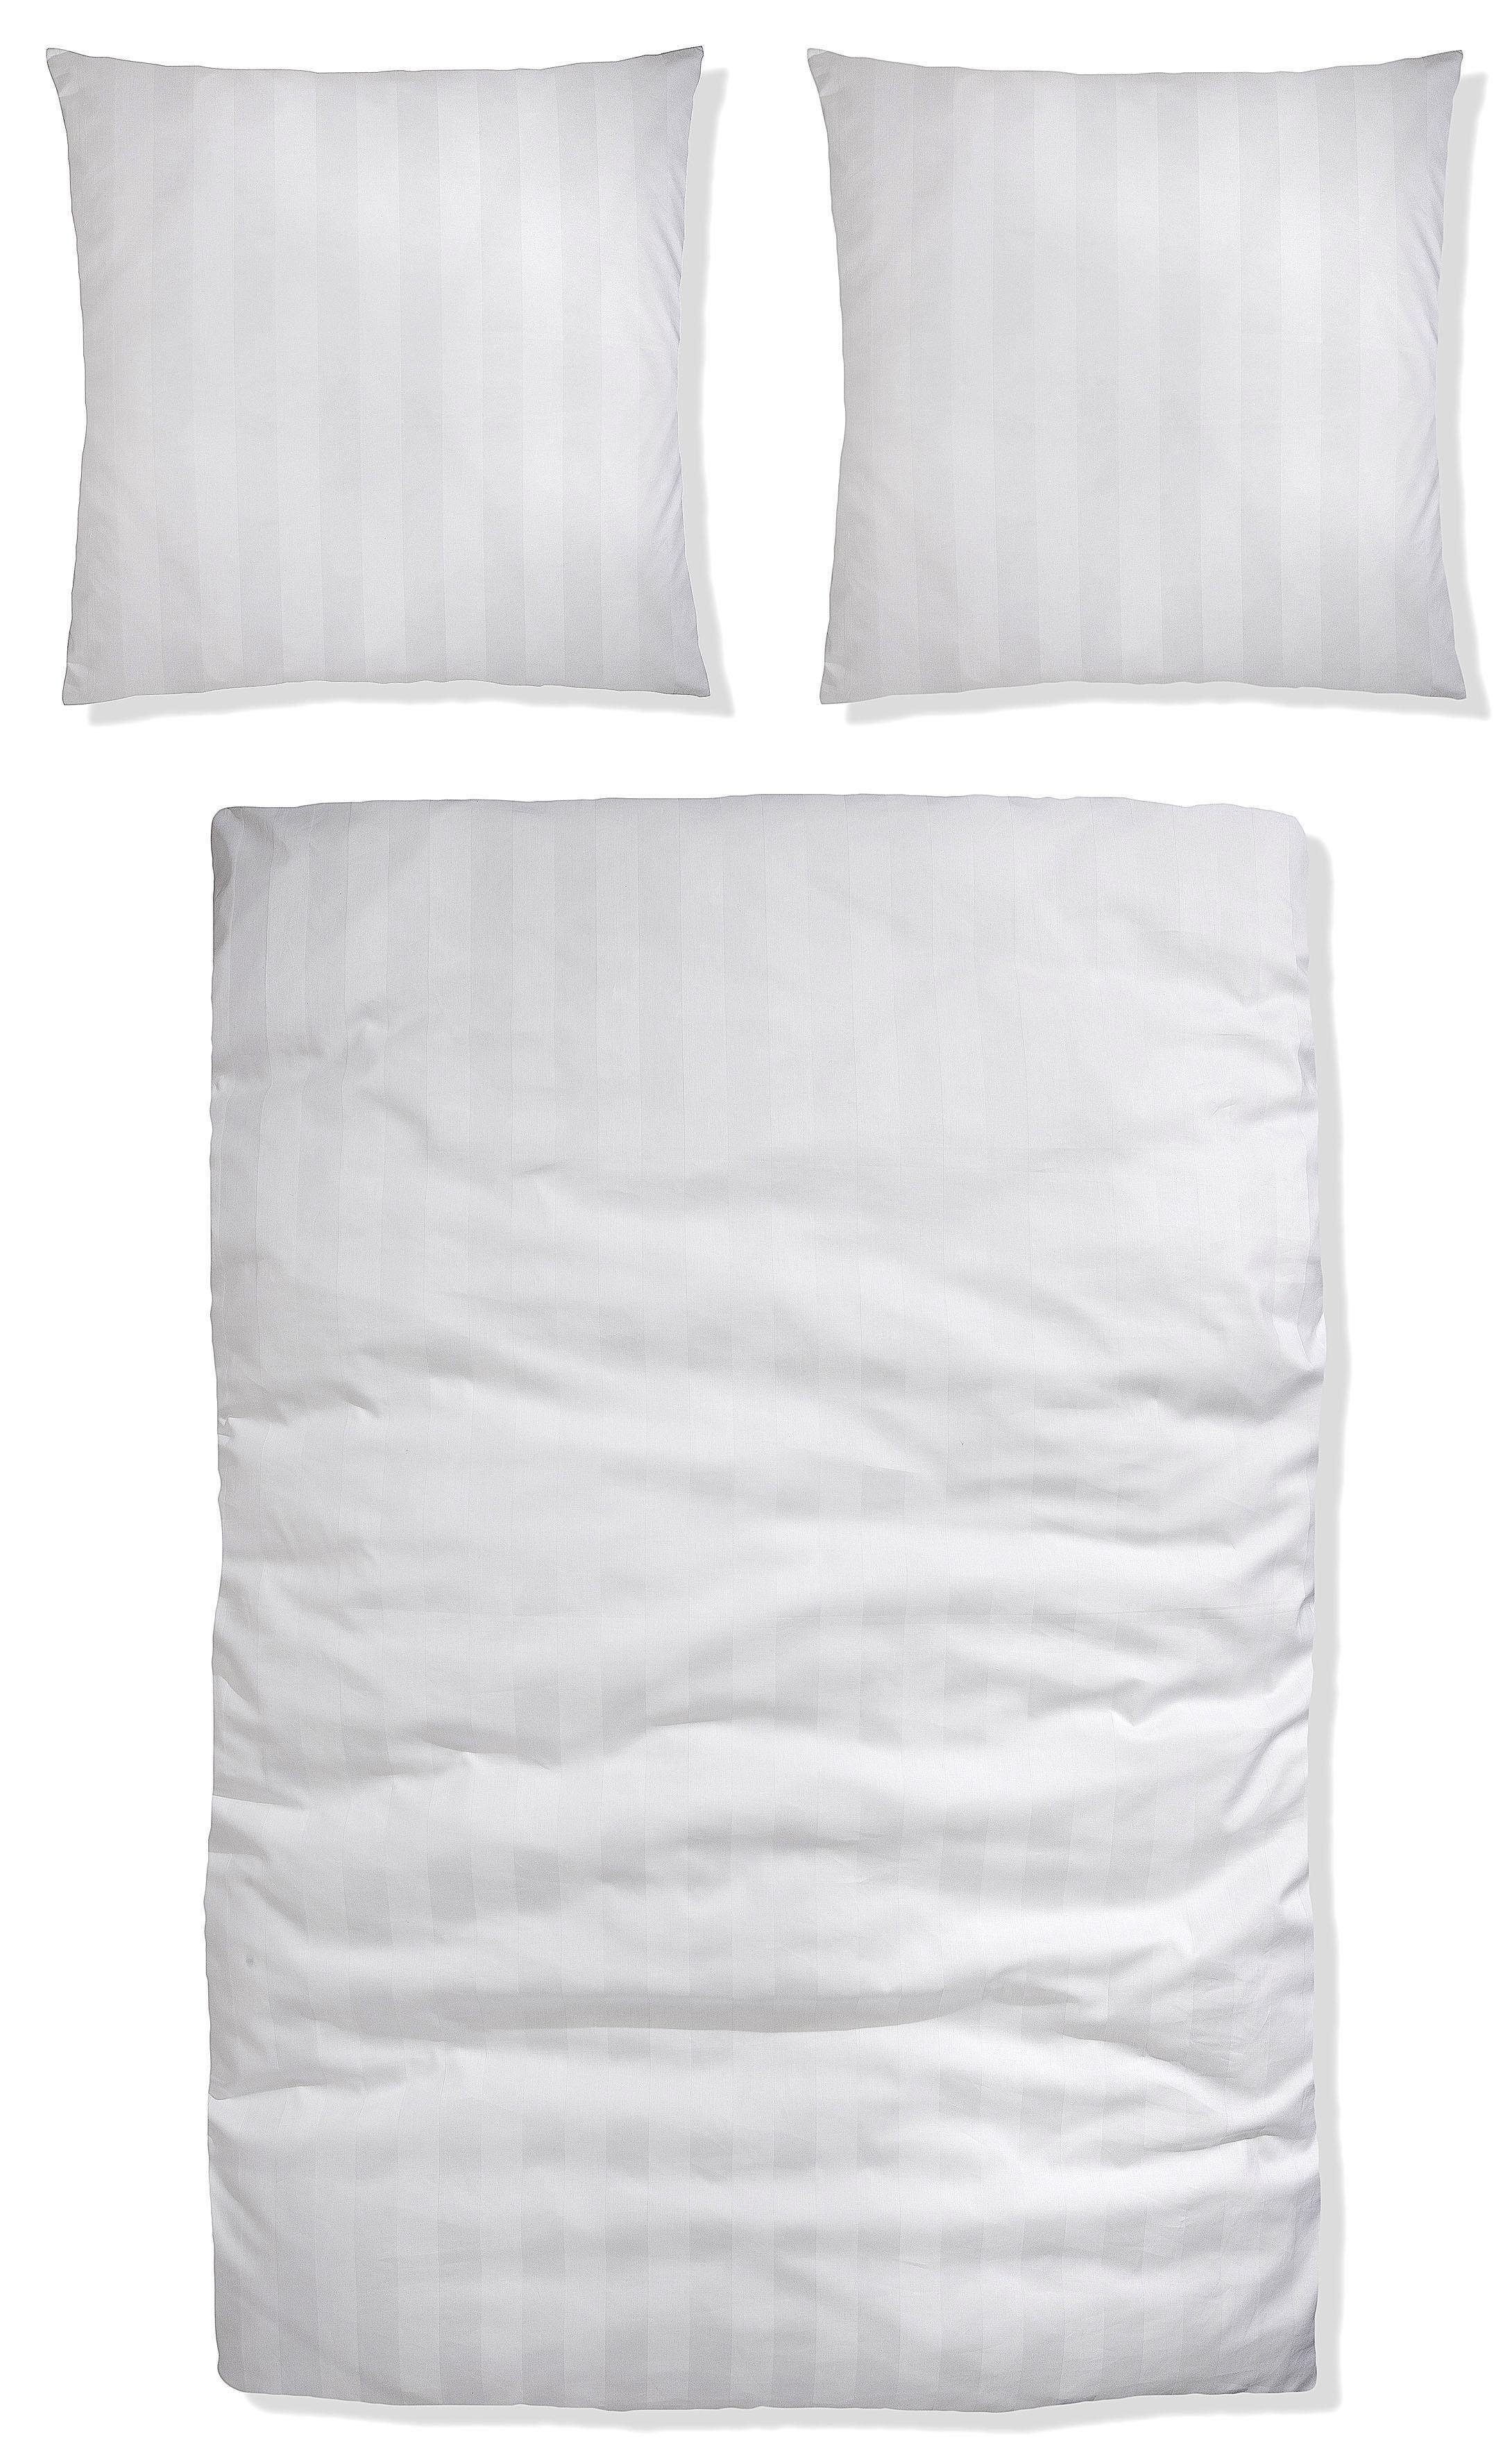 Bettwäsche Malia aus Bettwäsche Satin, Leonique, in oder in 2 weiß Gr. 135x200 155x220 Bettwäsche cm, zeitlose Baumwolle, teilig, Satin-Qualität